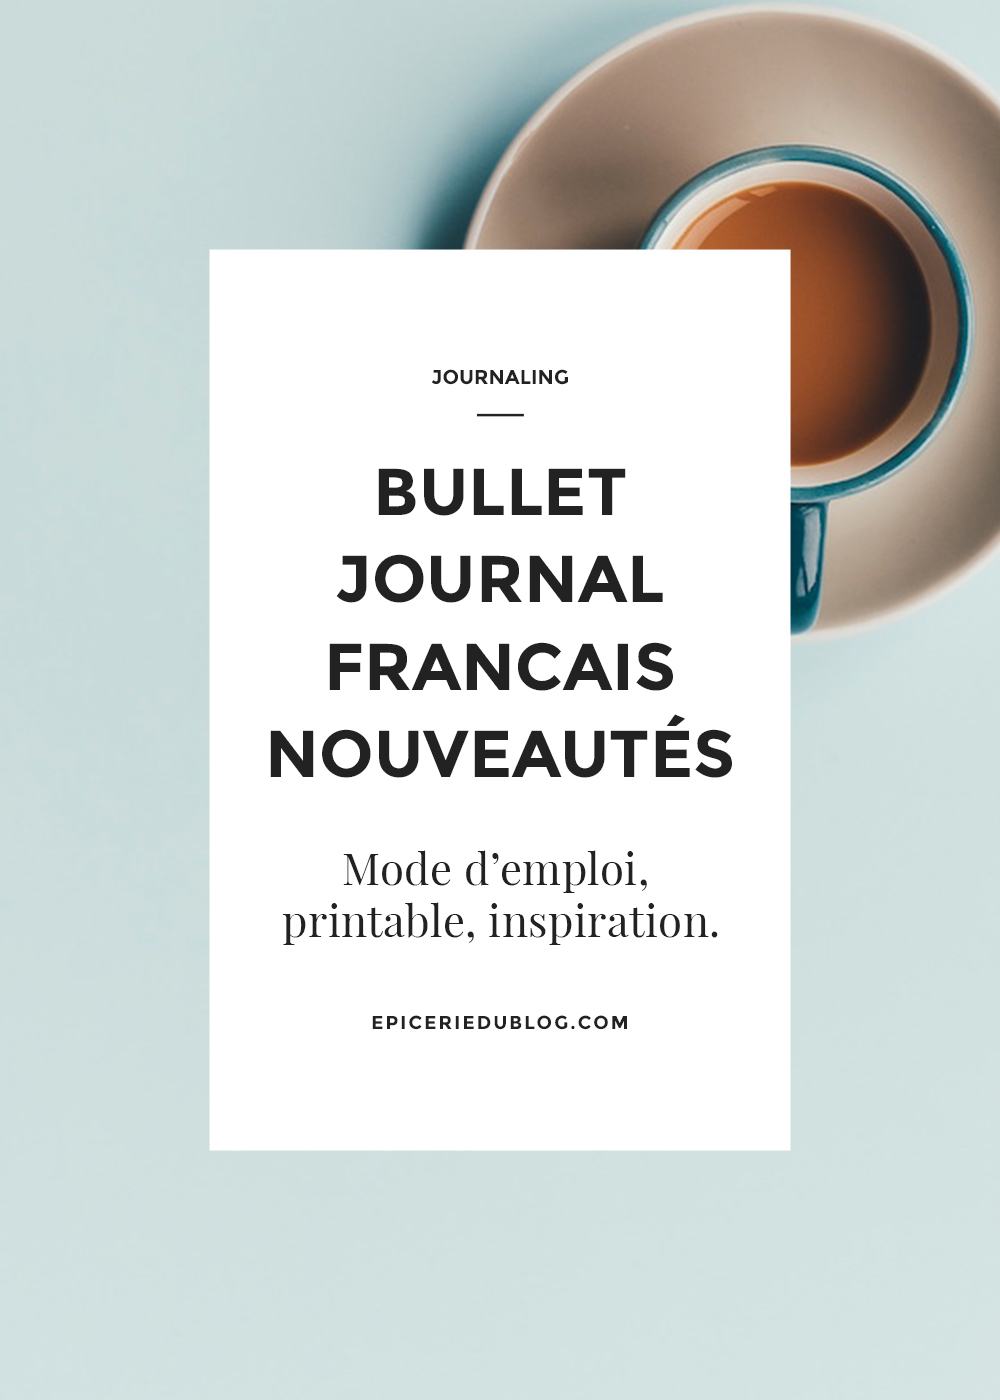 Bullet Journal français: 3 nouveaux blogs à découvrir!